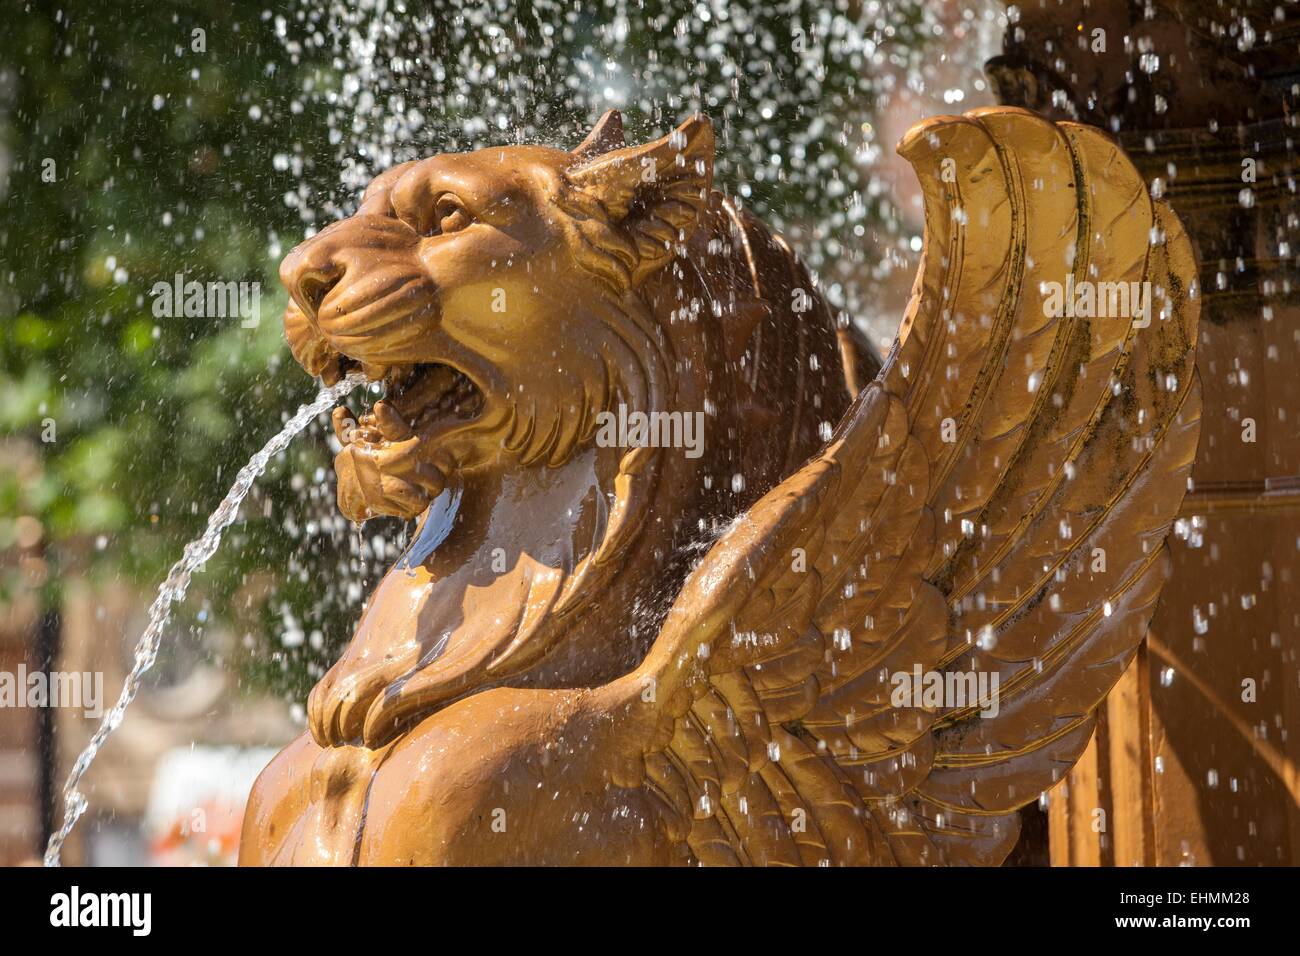 Fontaine d'intérieur sculpture lion - Boutique Ping Déco